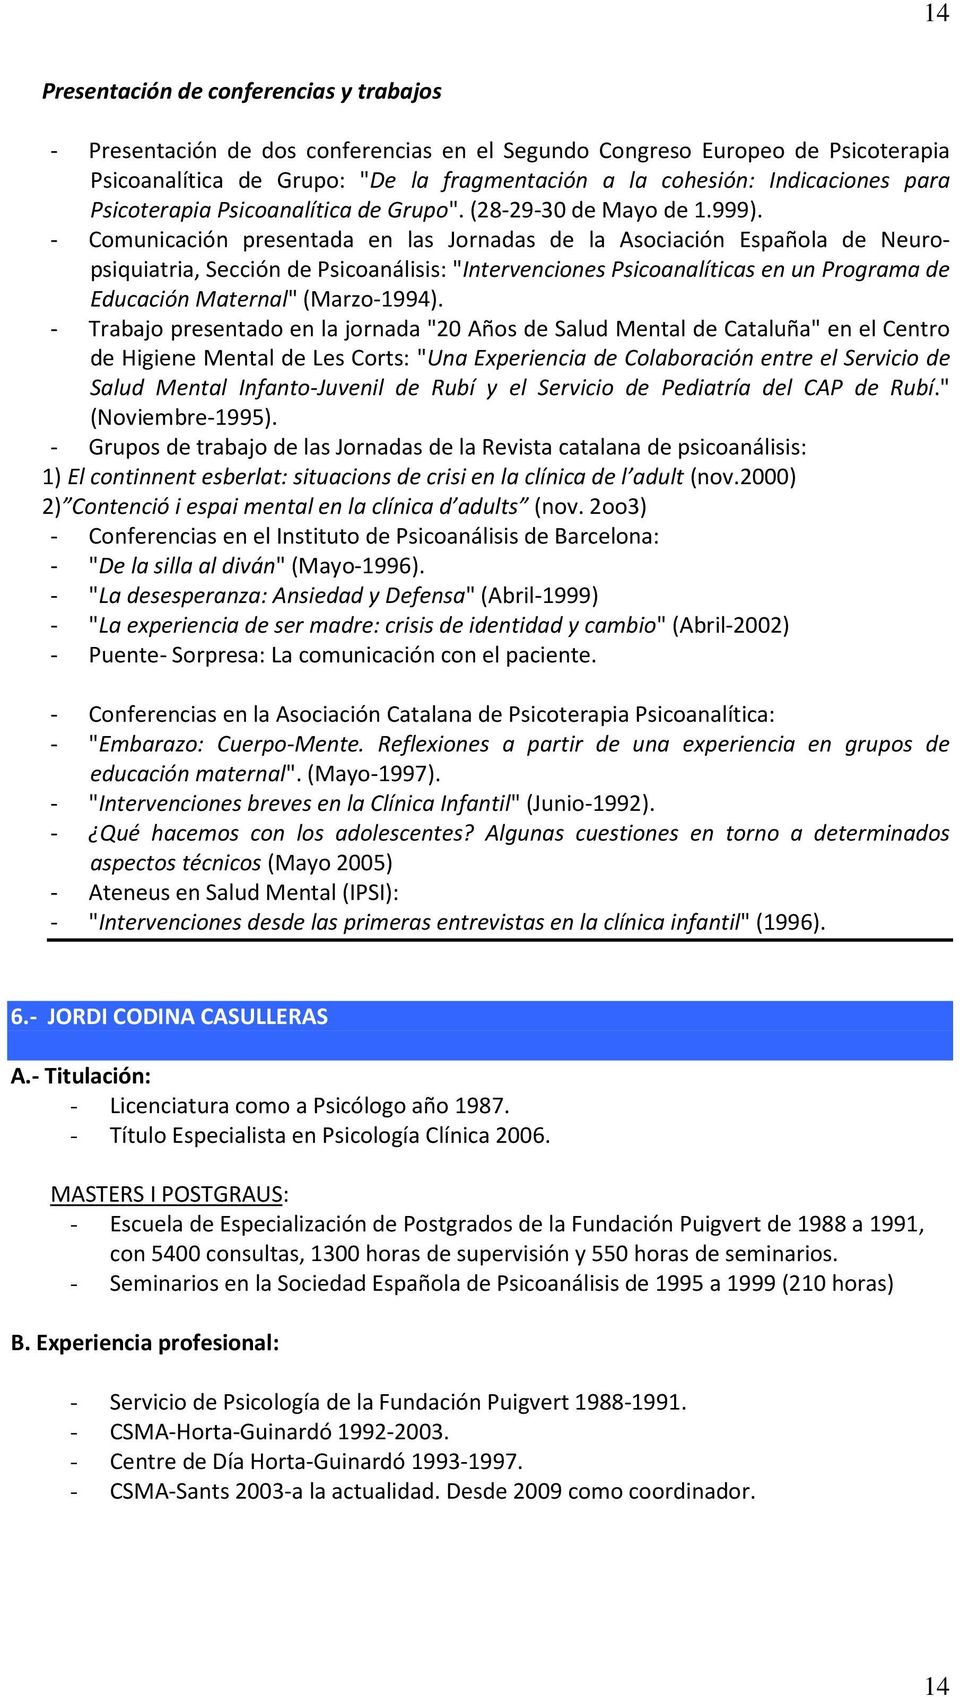 - Comunicación presentada en las Jornadas de la Asociación Española de Neuropsiquiatria, Sección de Psicoanálisis: "Intervenciones Psicoanalíticas en un Programa de Educación Maternal" (Marzo-1994).